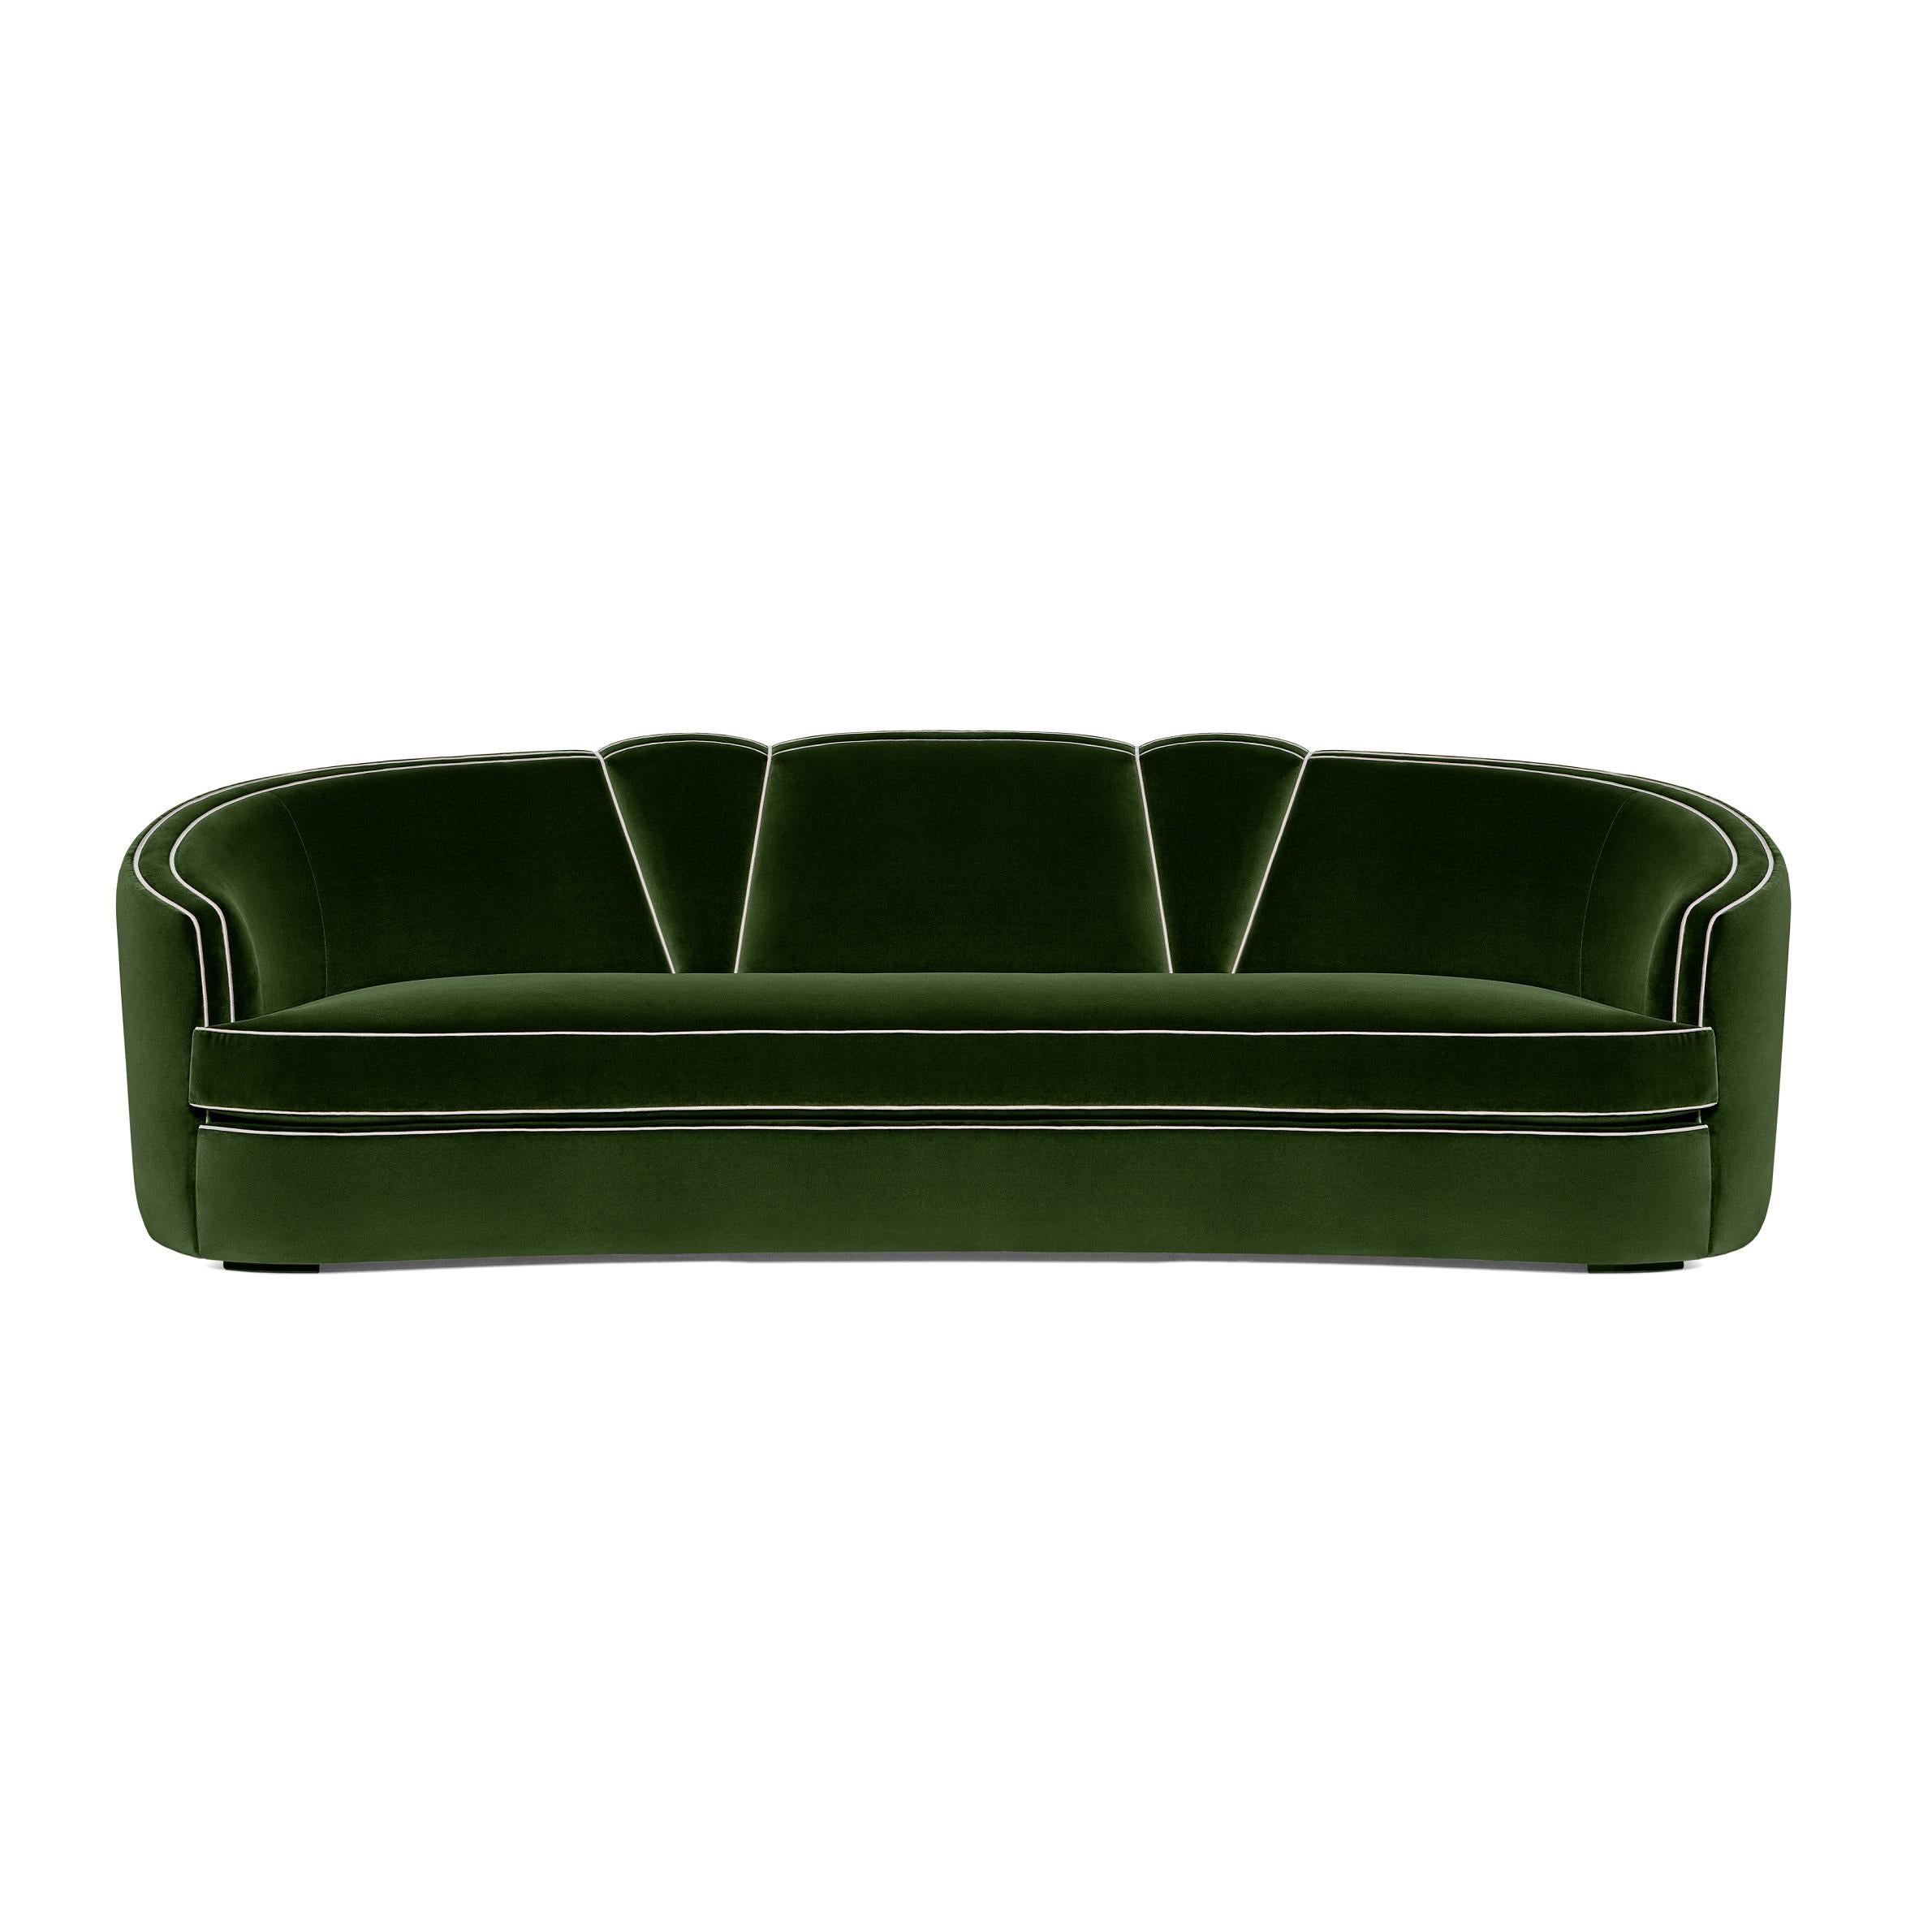 Dieses Sofa zeichnet sich durch ein wunderbar elegantes Fächermotiv mit akzentuiert geschwungenen Linien und einer dekadenten und aufwendigen Verarbeitung aus. Die femininen Rundungen werden durch die verschiedenfarbigen Paspeln hinreißend